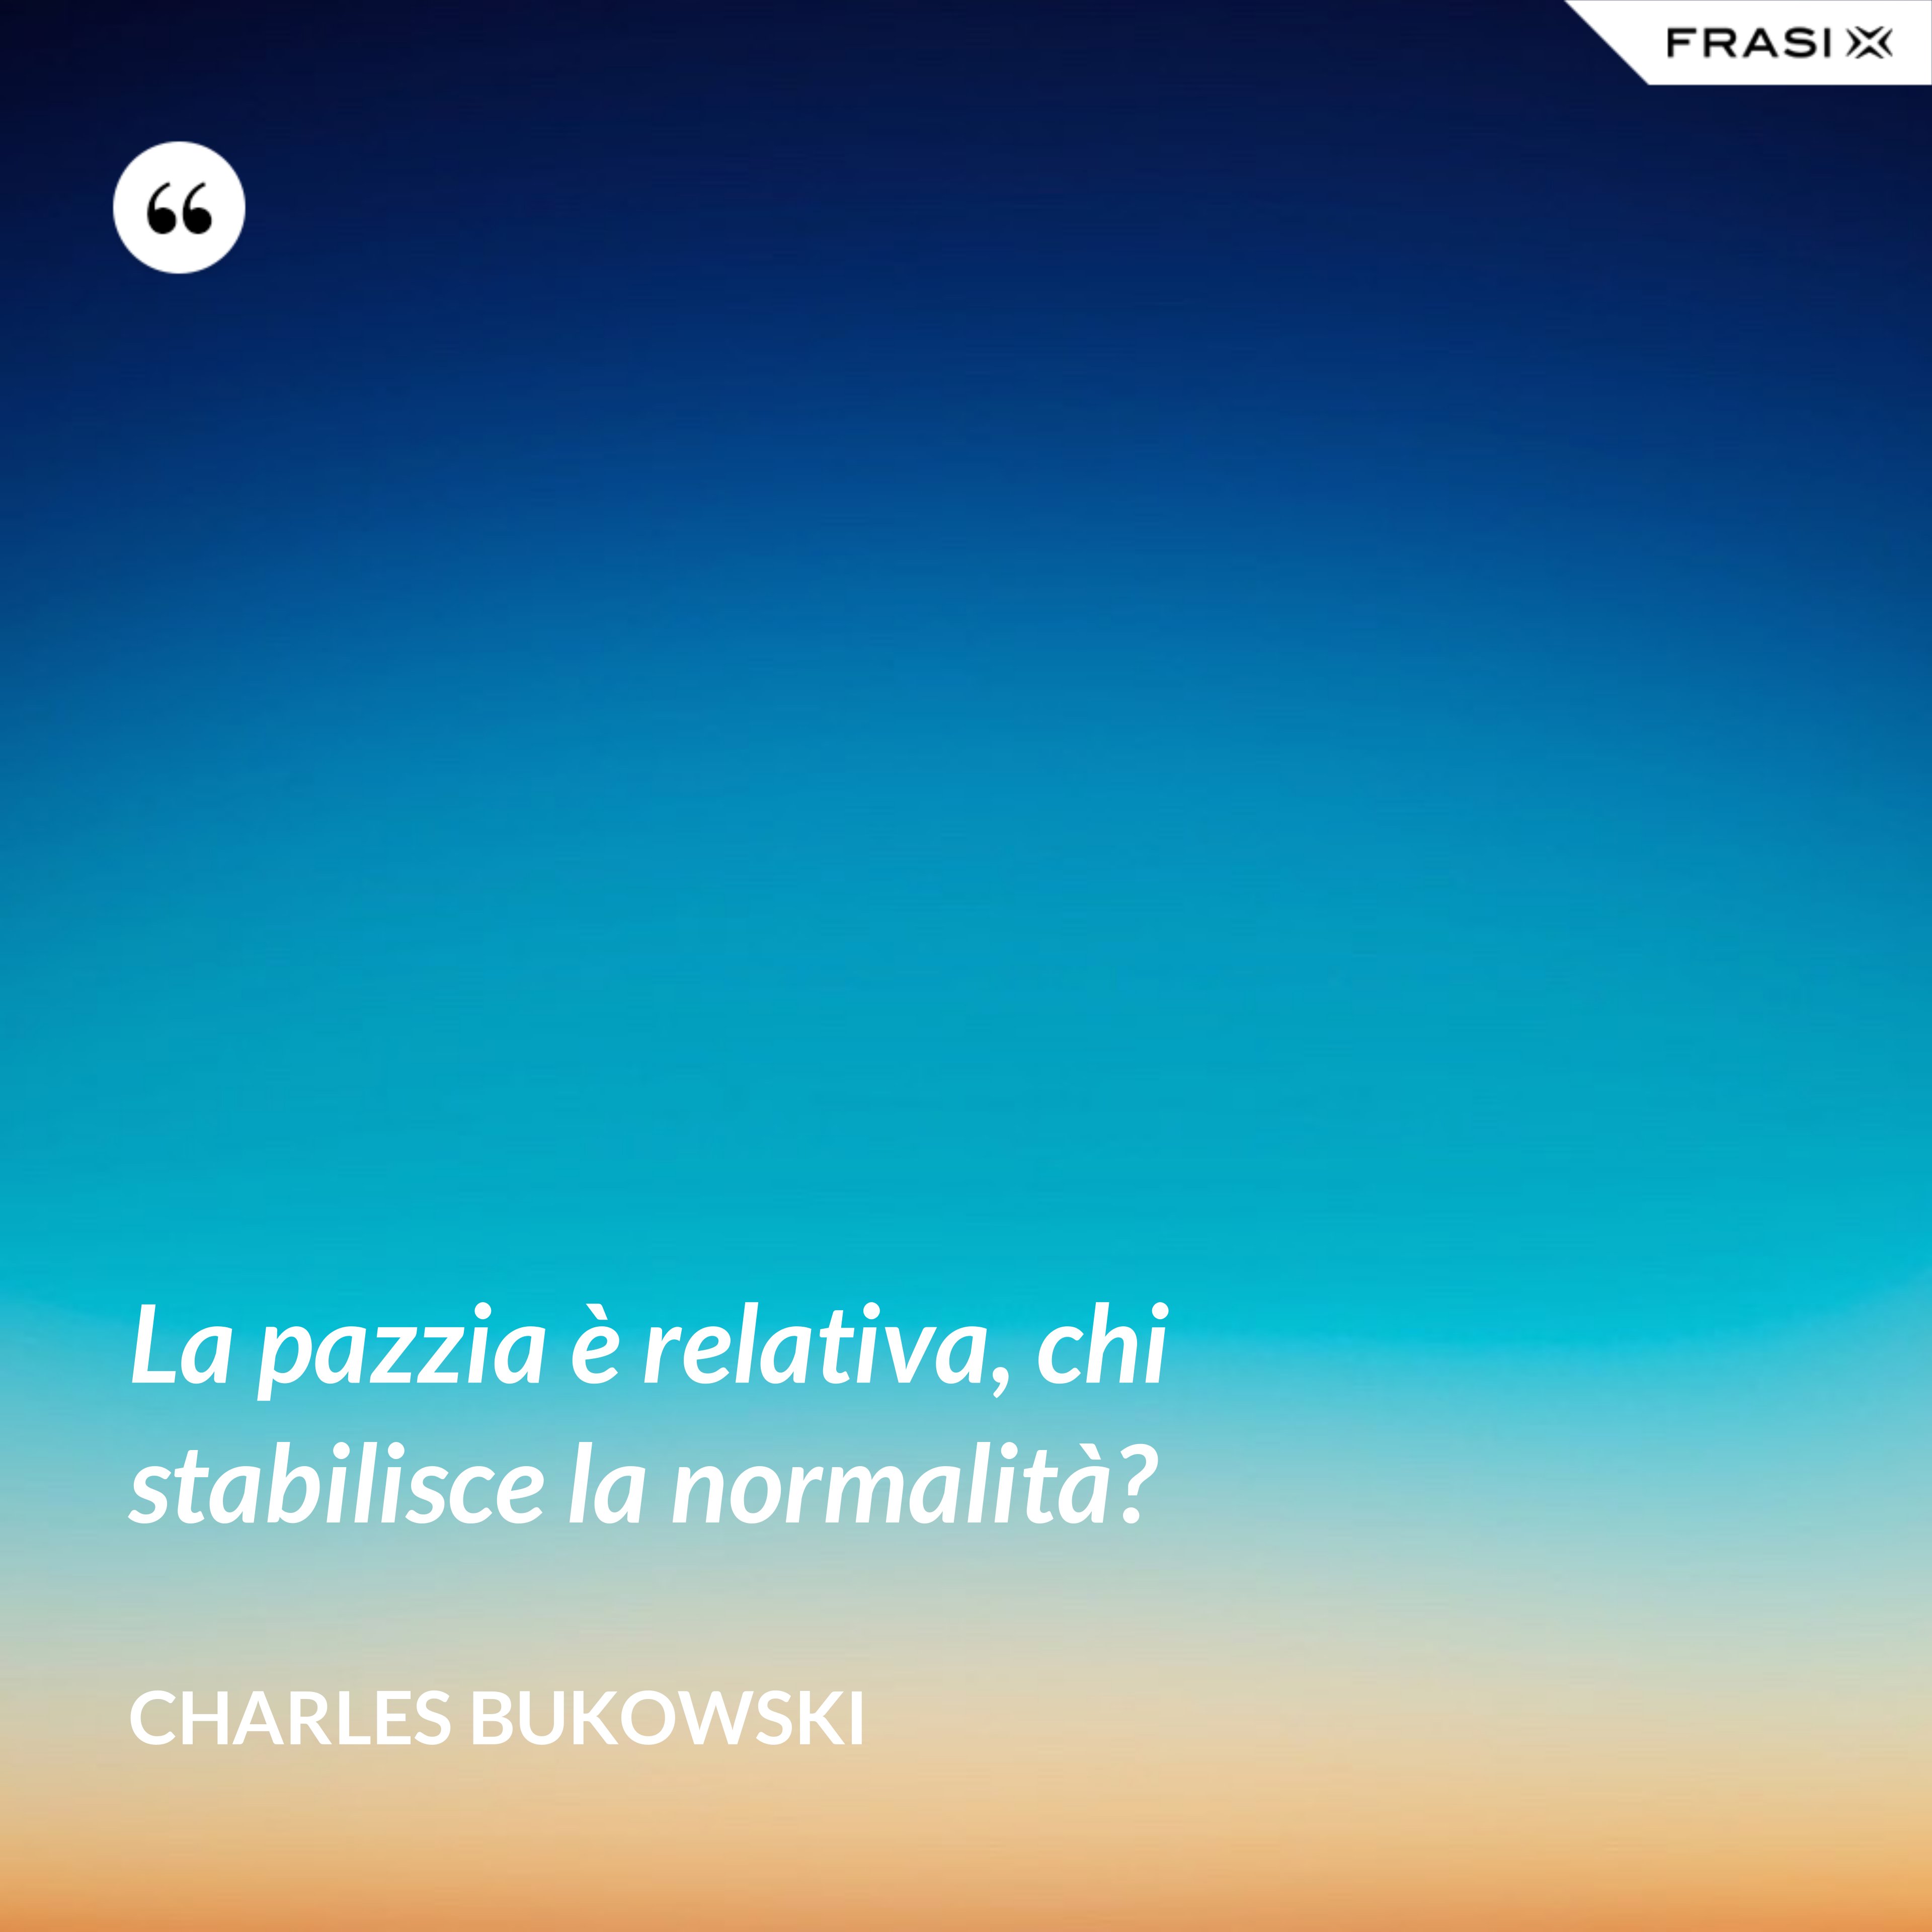 La pazzia è relativa, chi stabilisce la normalità? - Charles Bukowski